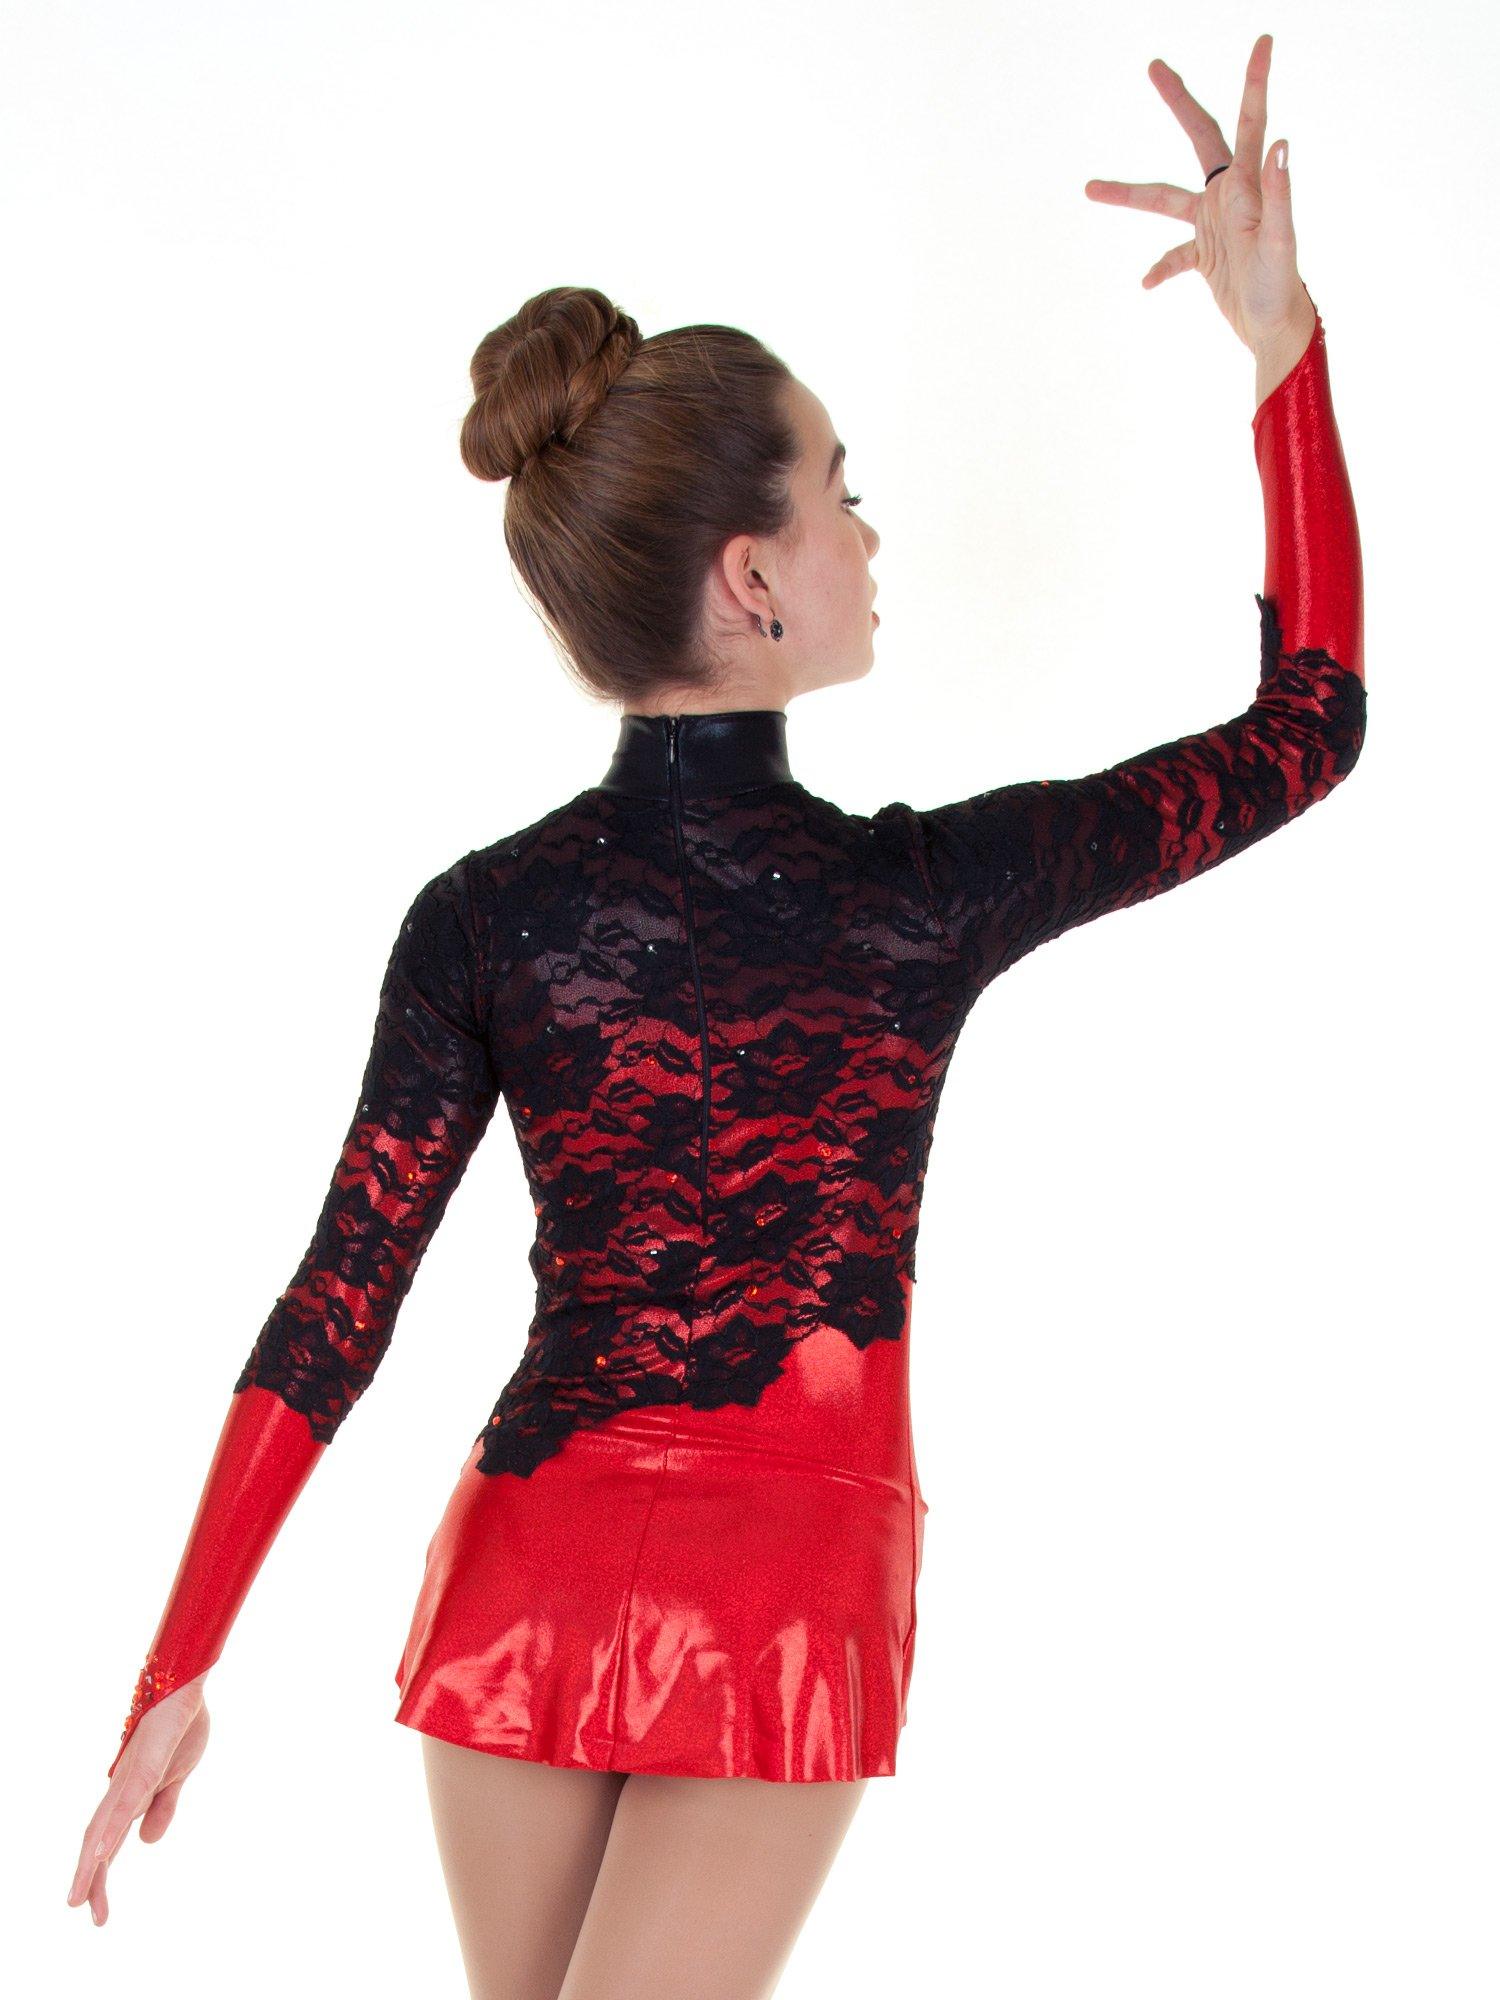 Jalie 3356 - Rhythmic Gymnastics Dress with Lace Overlay